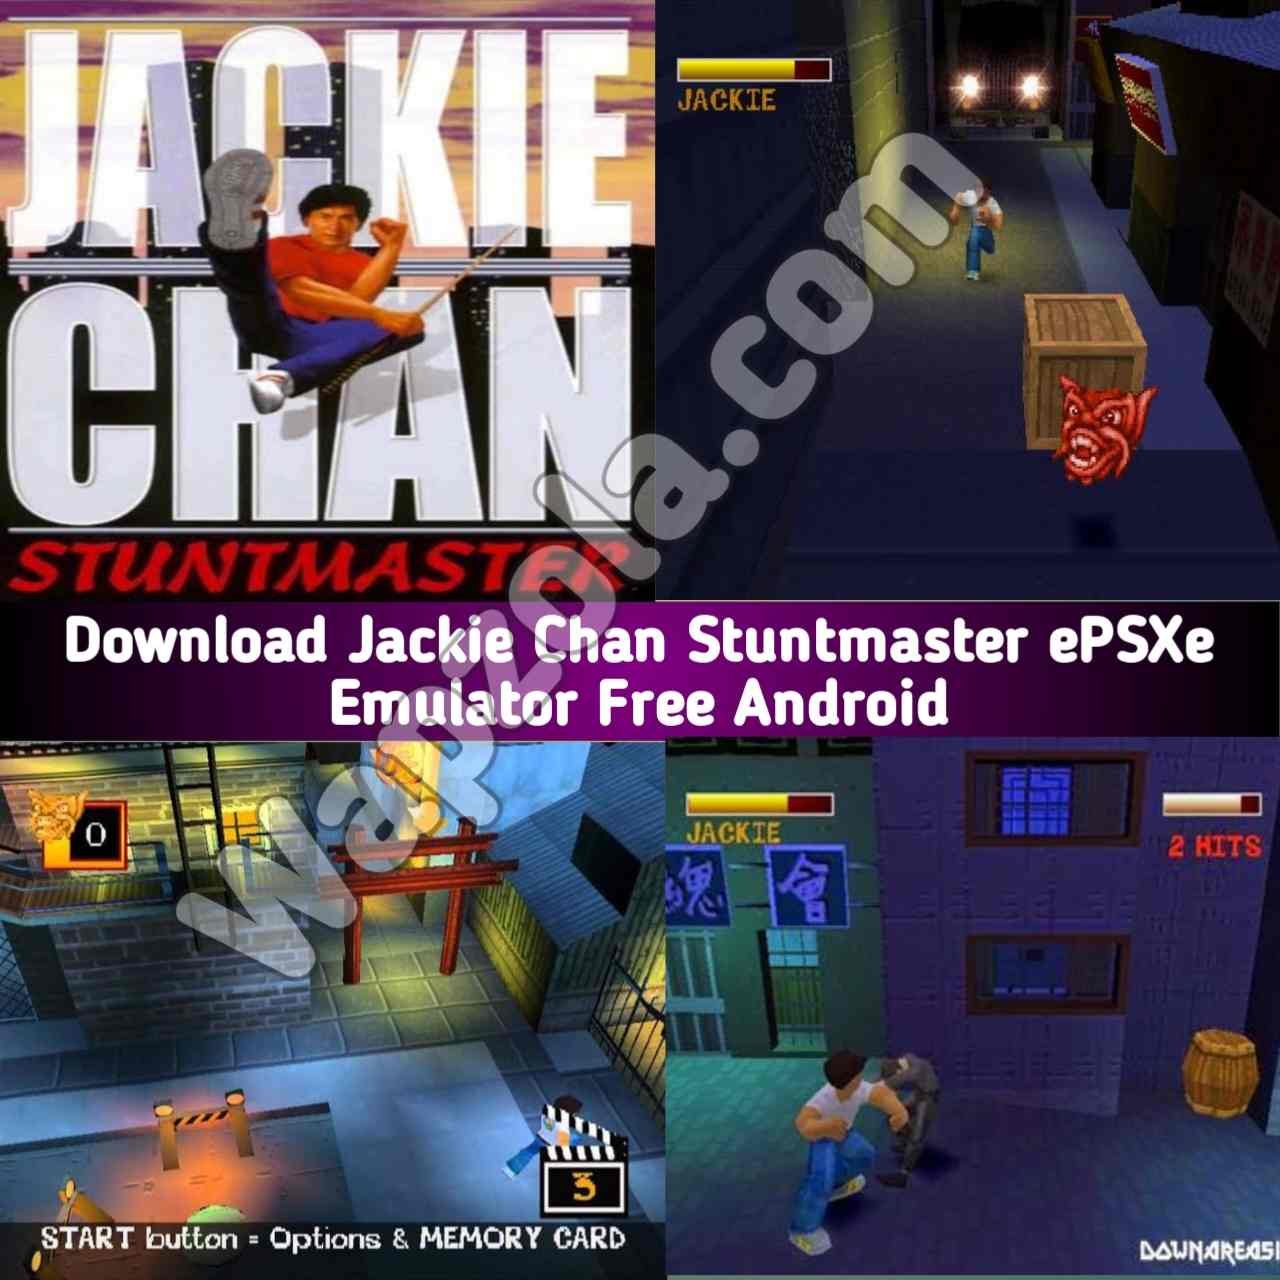 [Descargar] Jackie Chan Stuntmaster ROM (ISO) ePSXe y emulador Fpse (tamaño 35 MB) altamente comprimido – Sony Playstation / PSX / PS1 APK BIN/CUE play en Android y PC